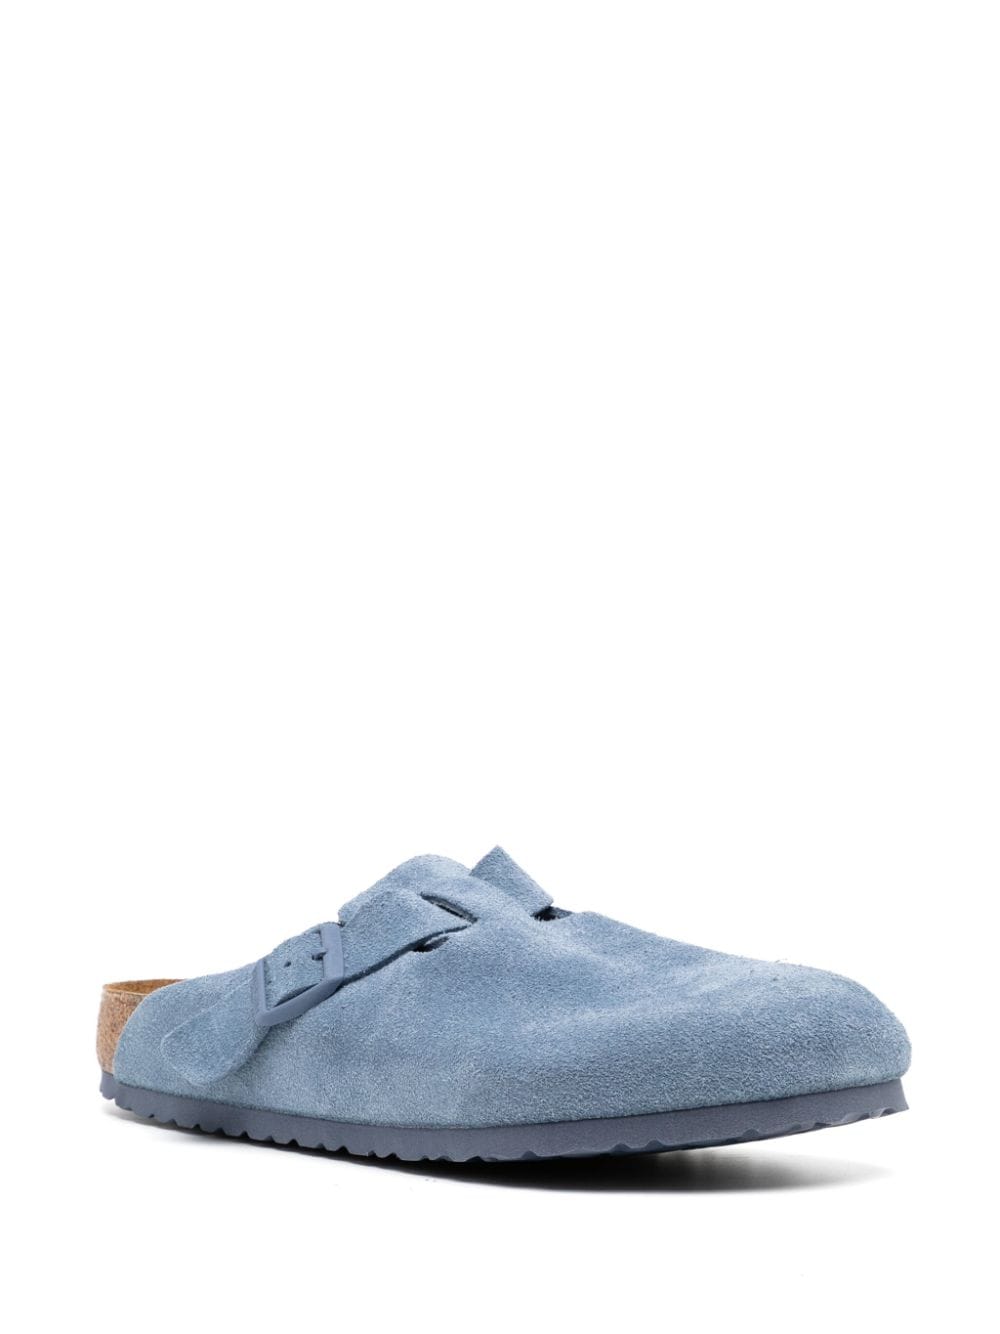 Birkenstock buckled suede leather slippers - Blauw